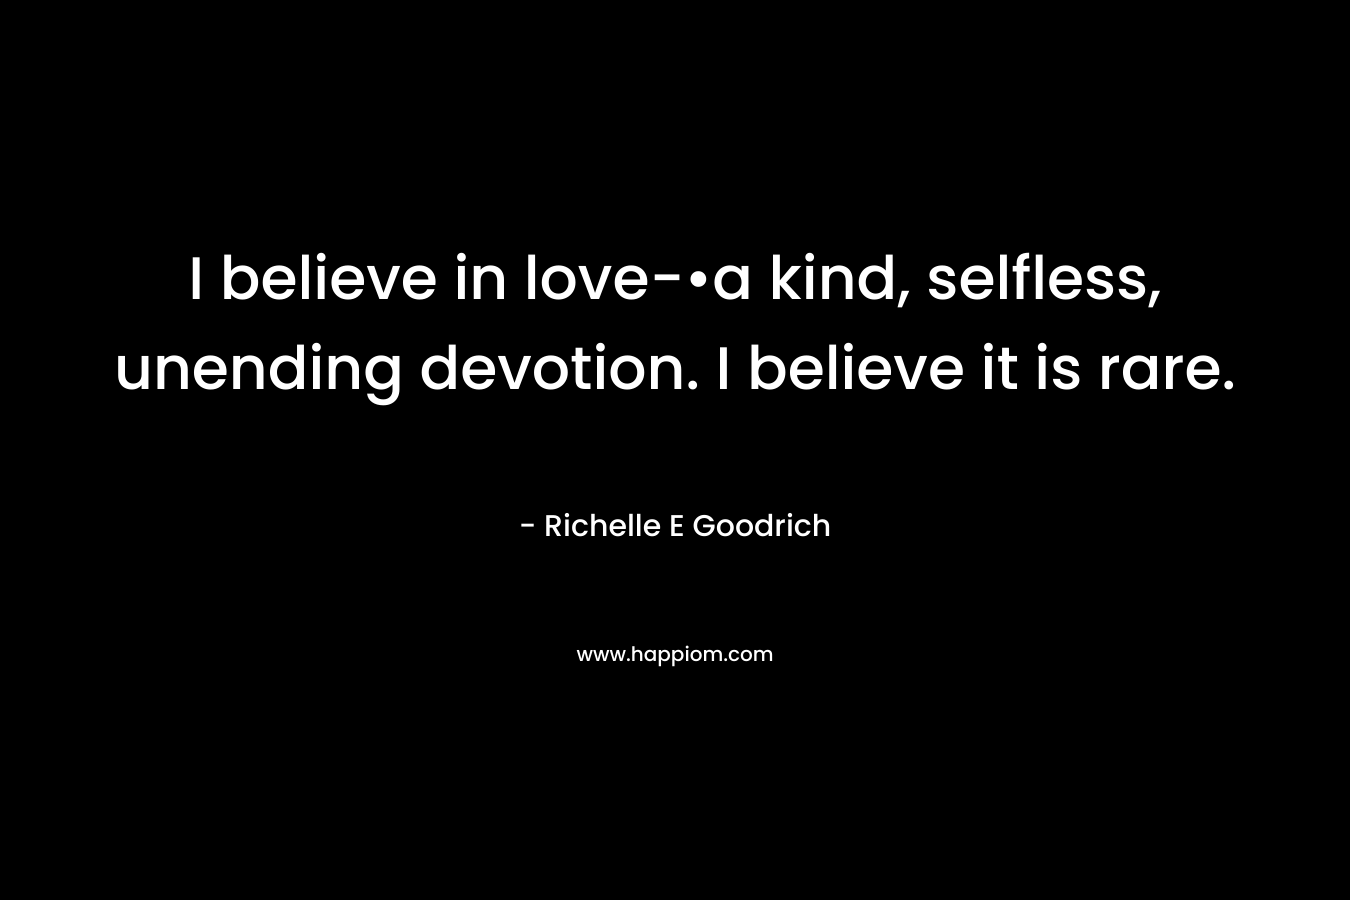 I believe in love-•a kind, selfless, unending devotion. I believe it is rare. – Richelle E Goodrich